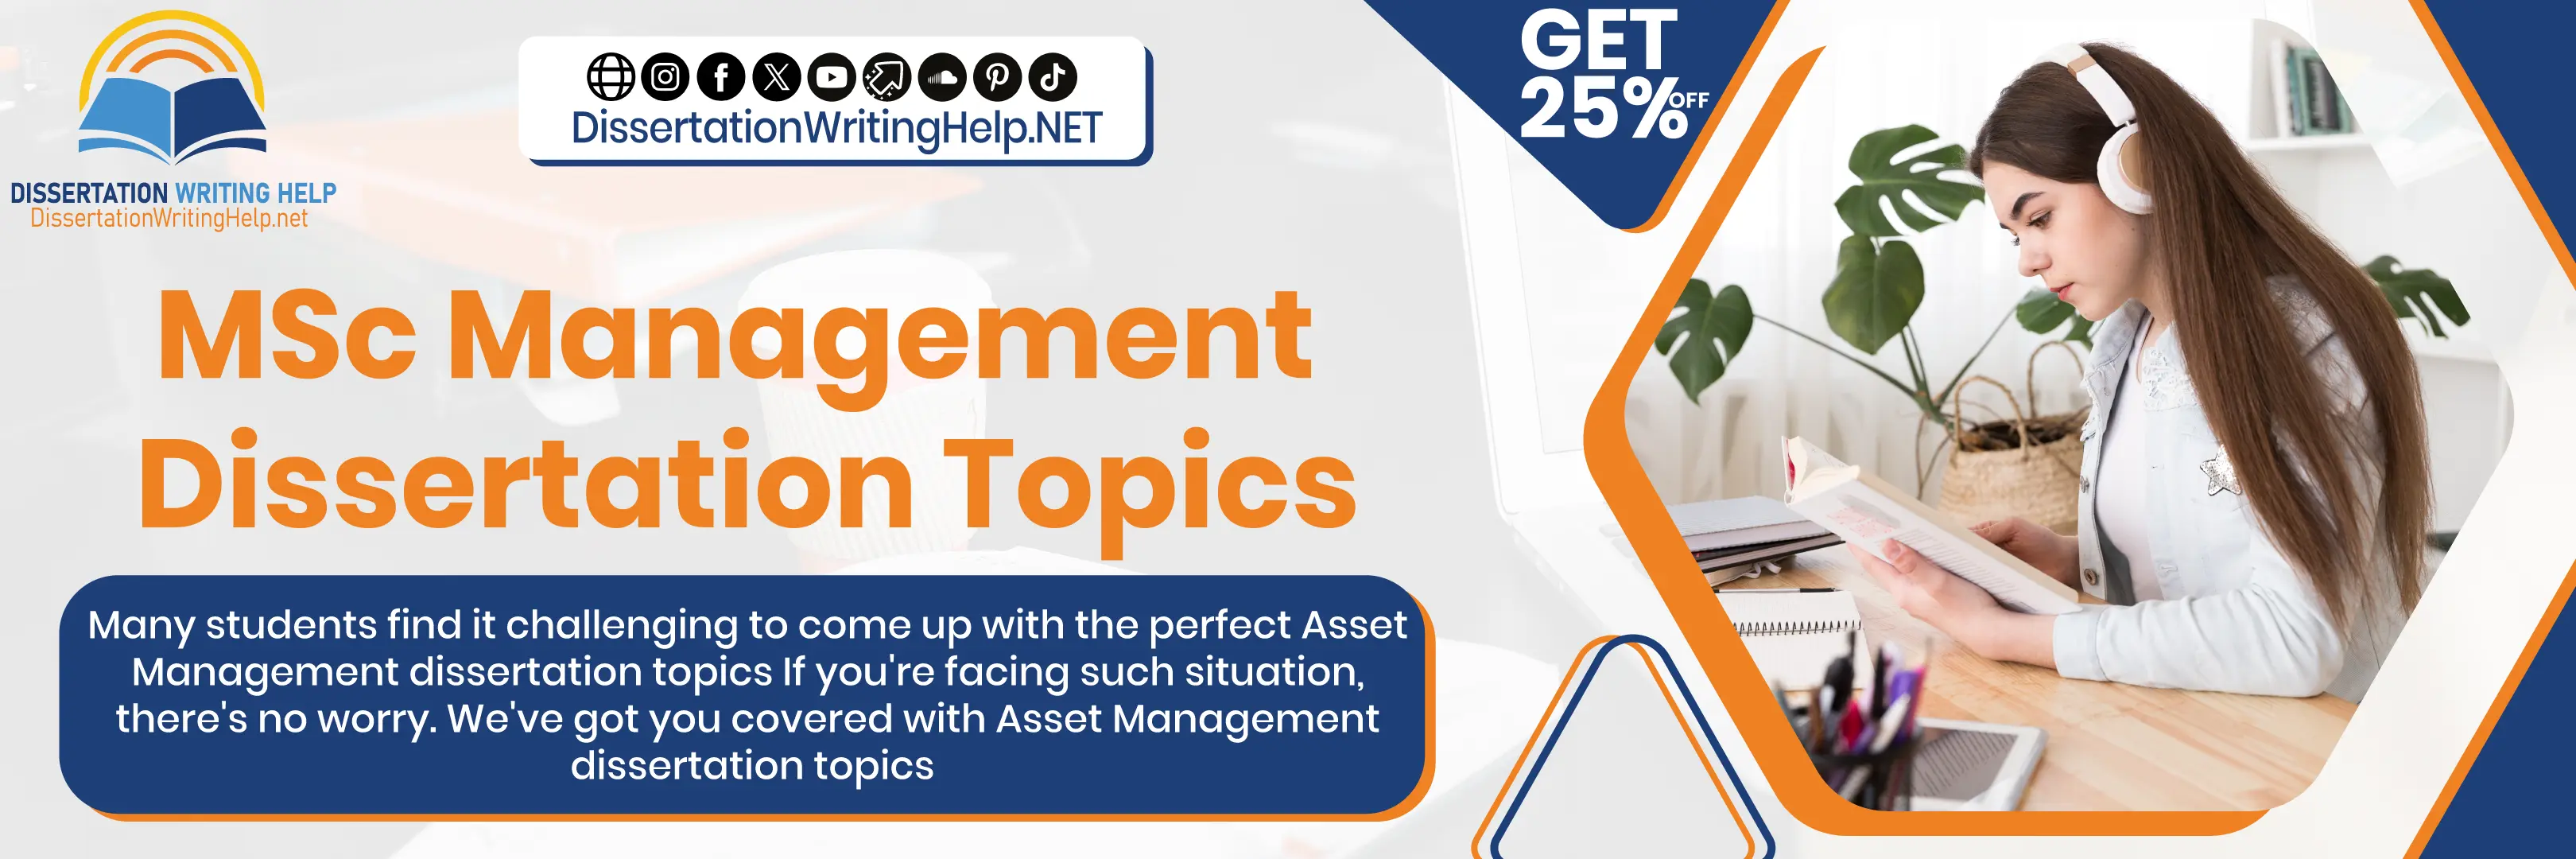 Explore Asset Management Dissertation Topics MSc Management